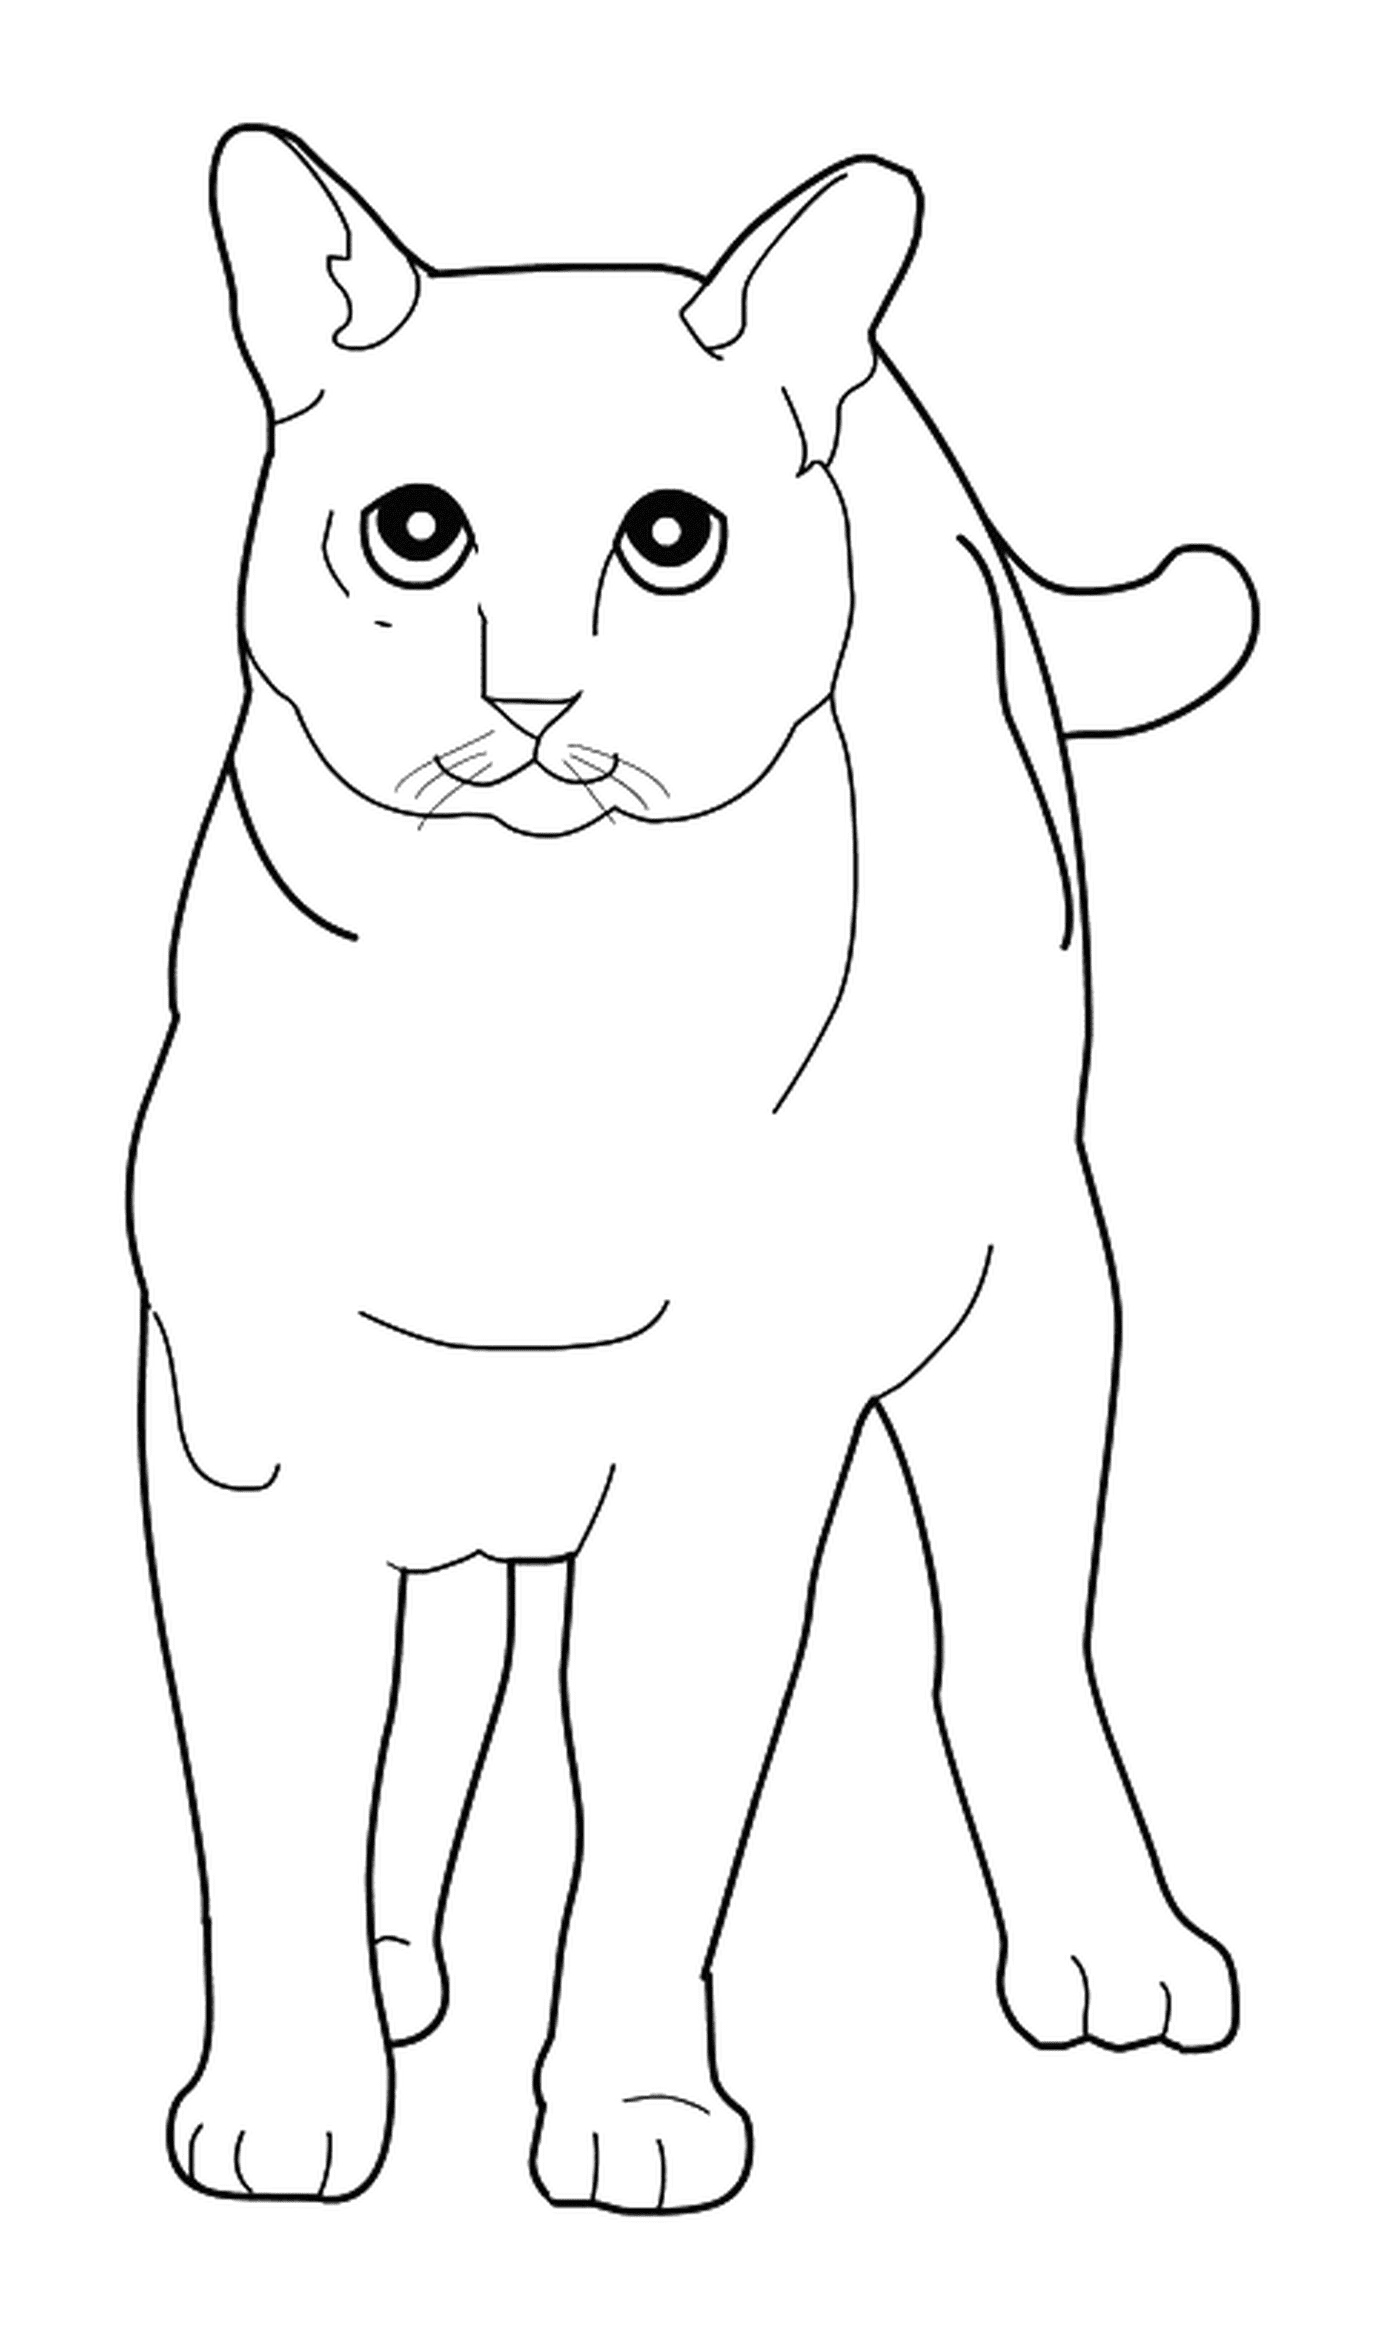  تونكينسيسي، القطة تقف في رسمة على الإنترنت 